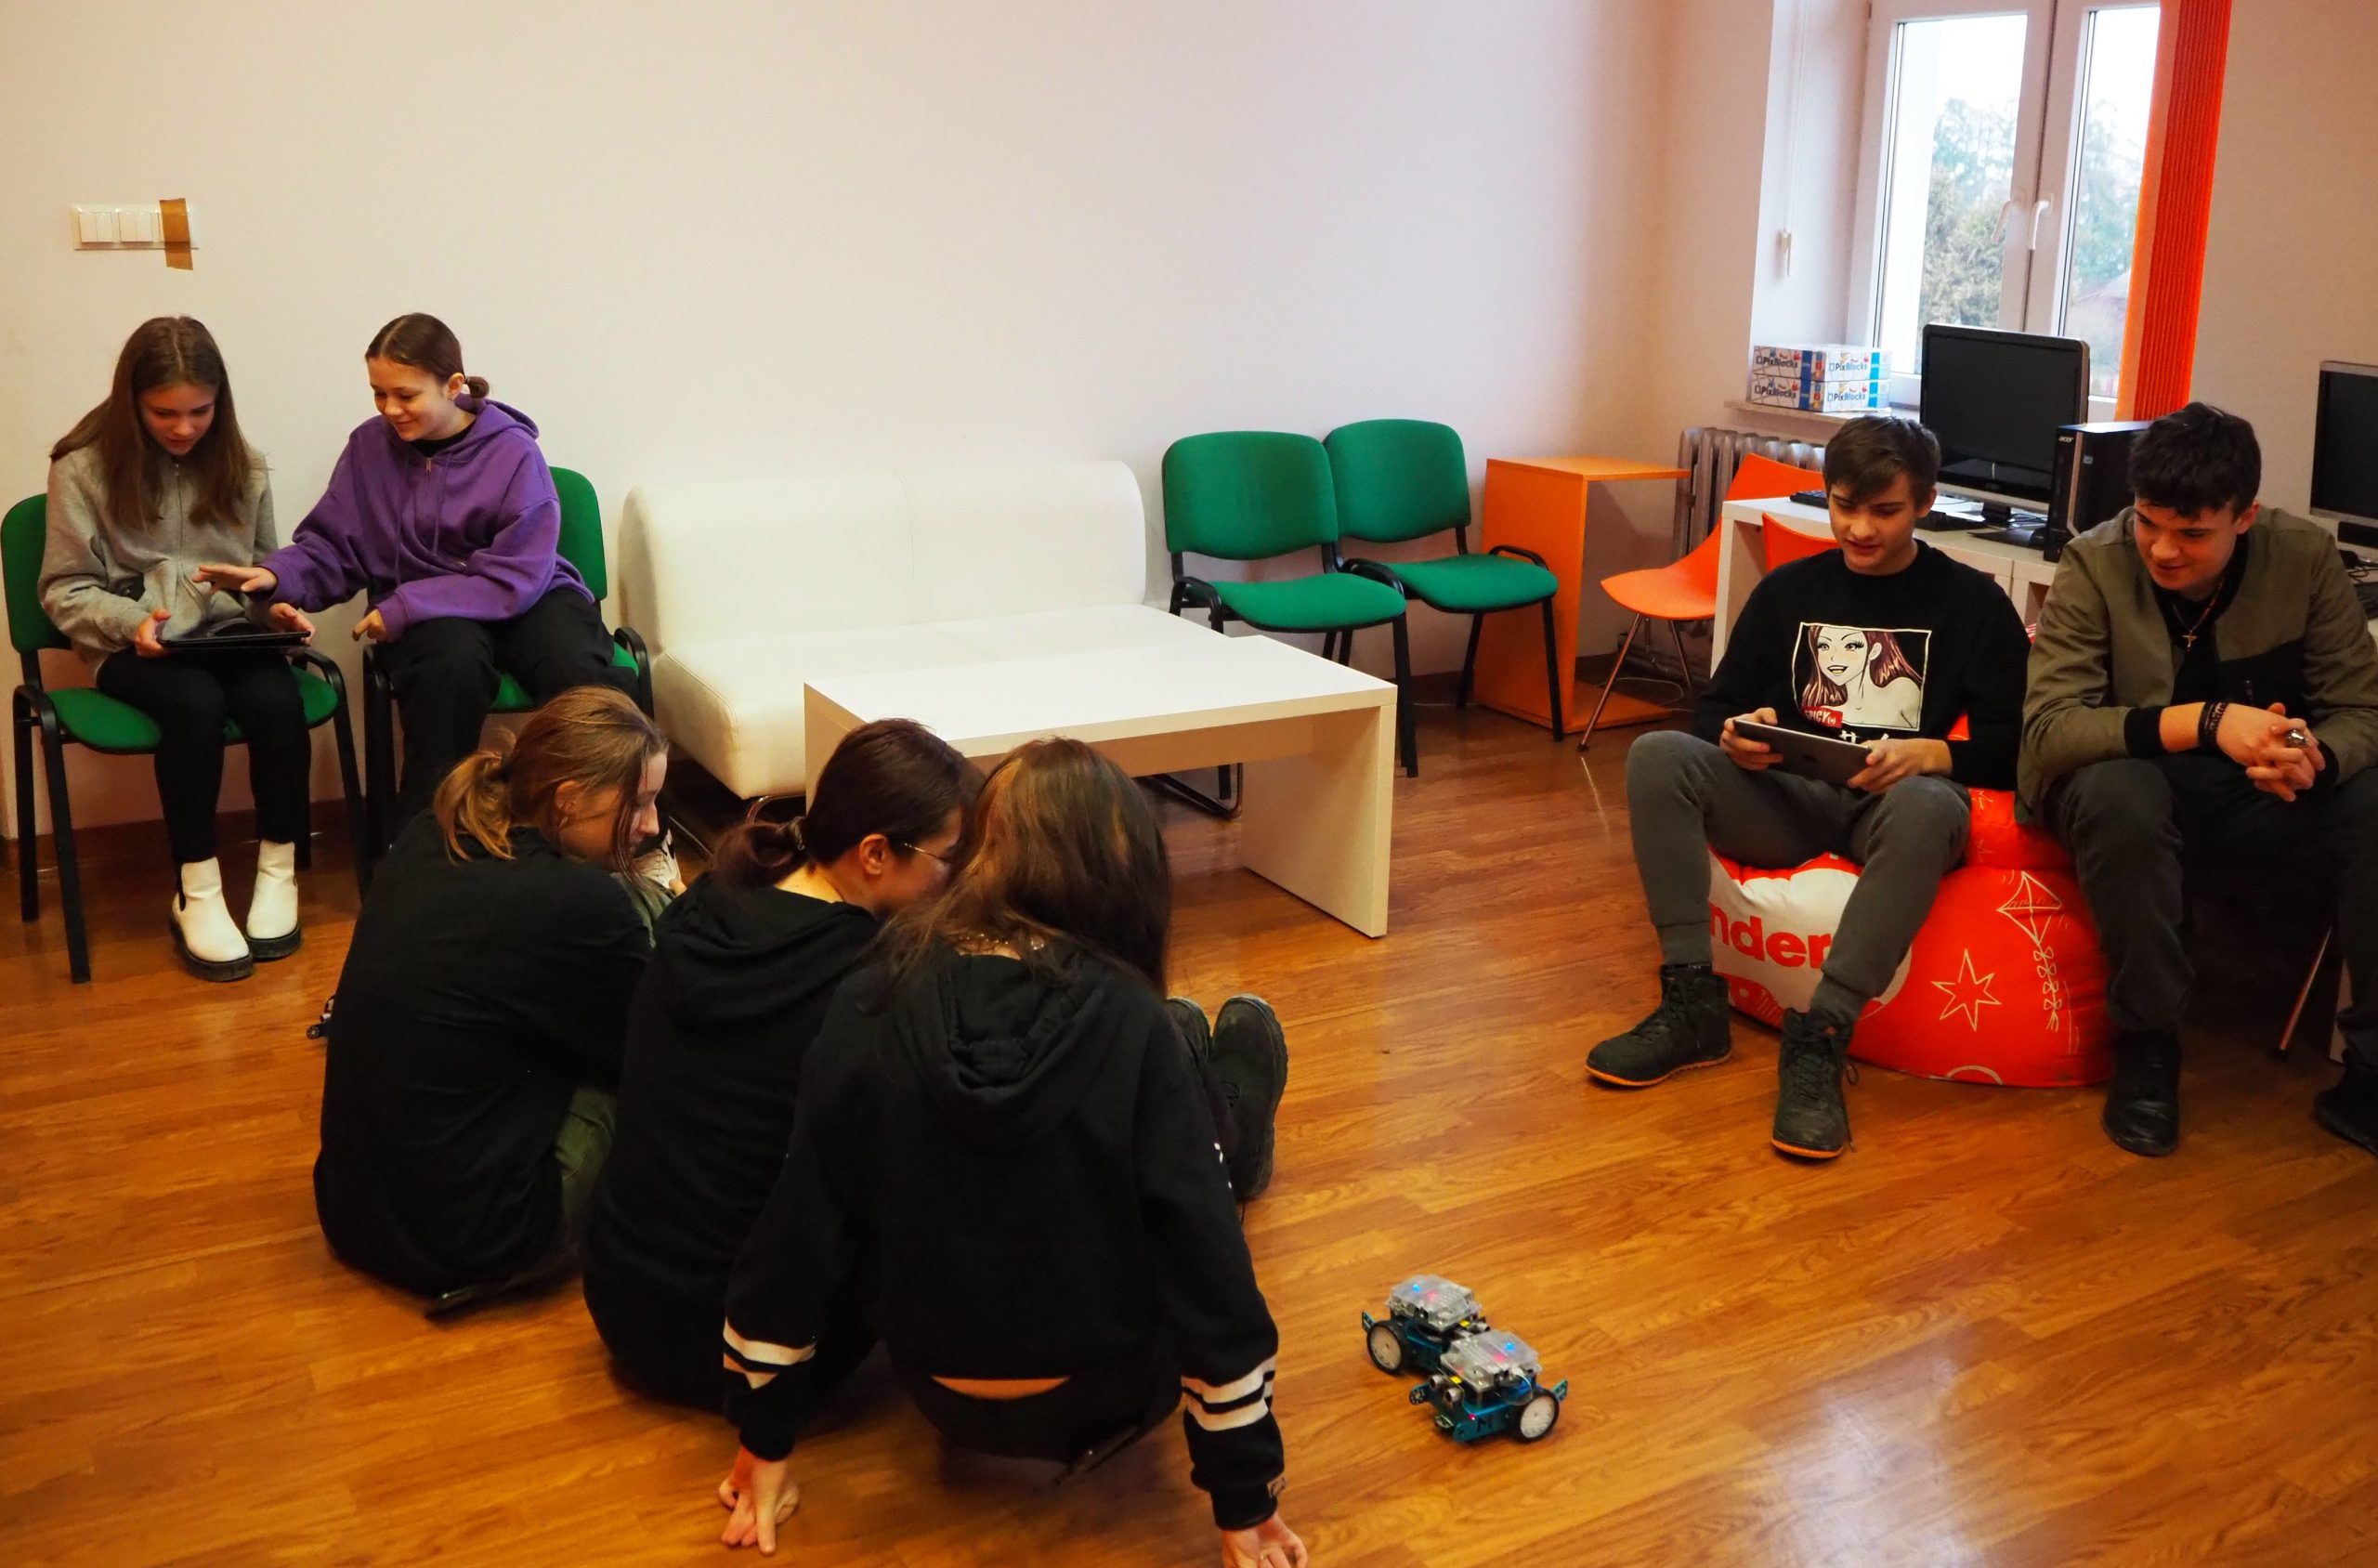 ósemka młodych ludzi podczas zajęć warsztatowych korzysta z tabletów